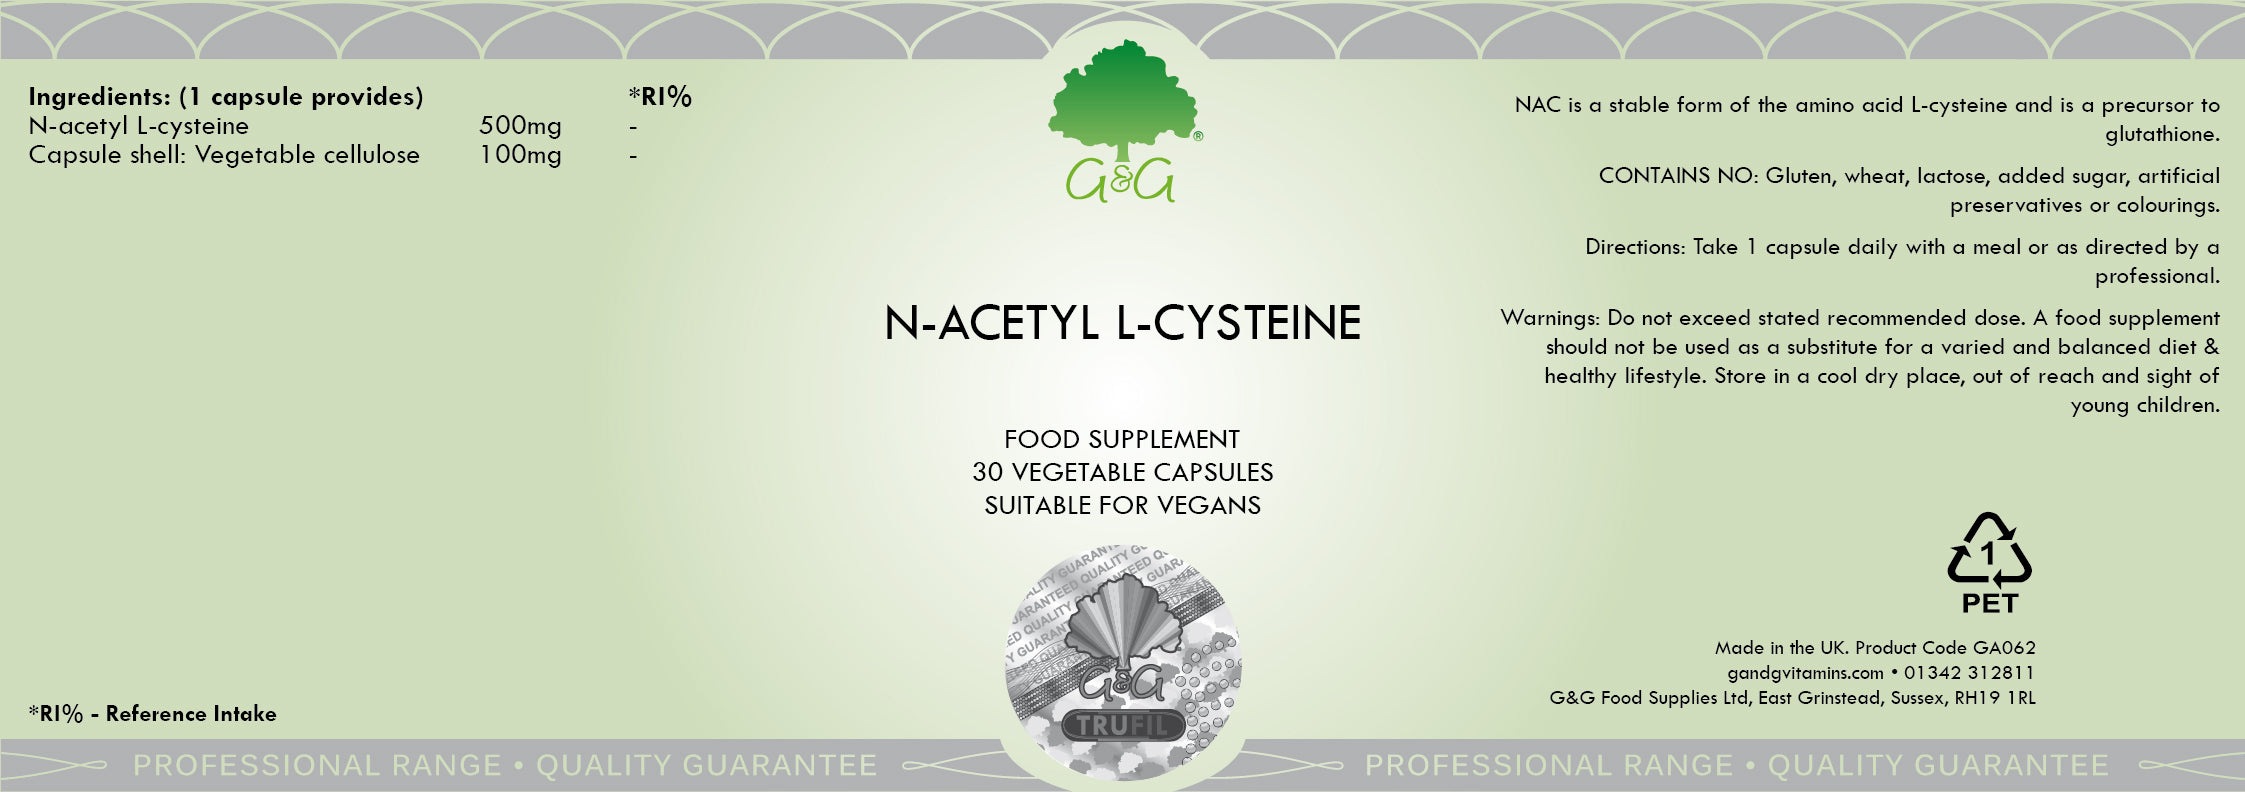 G&G Vitamins N-Acetyl L-Cysteine 30's